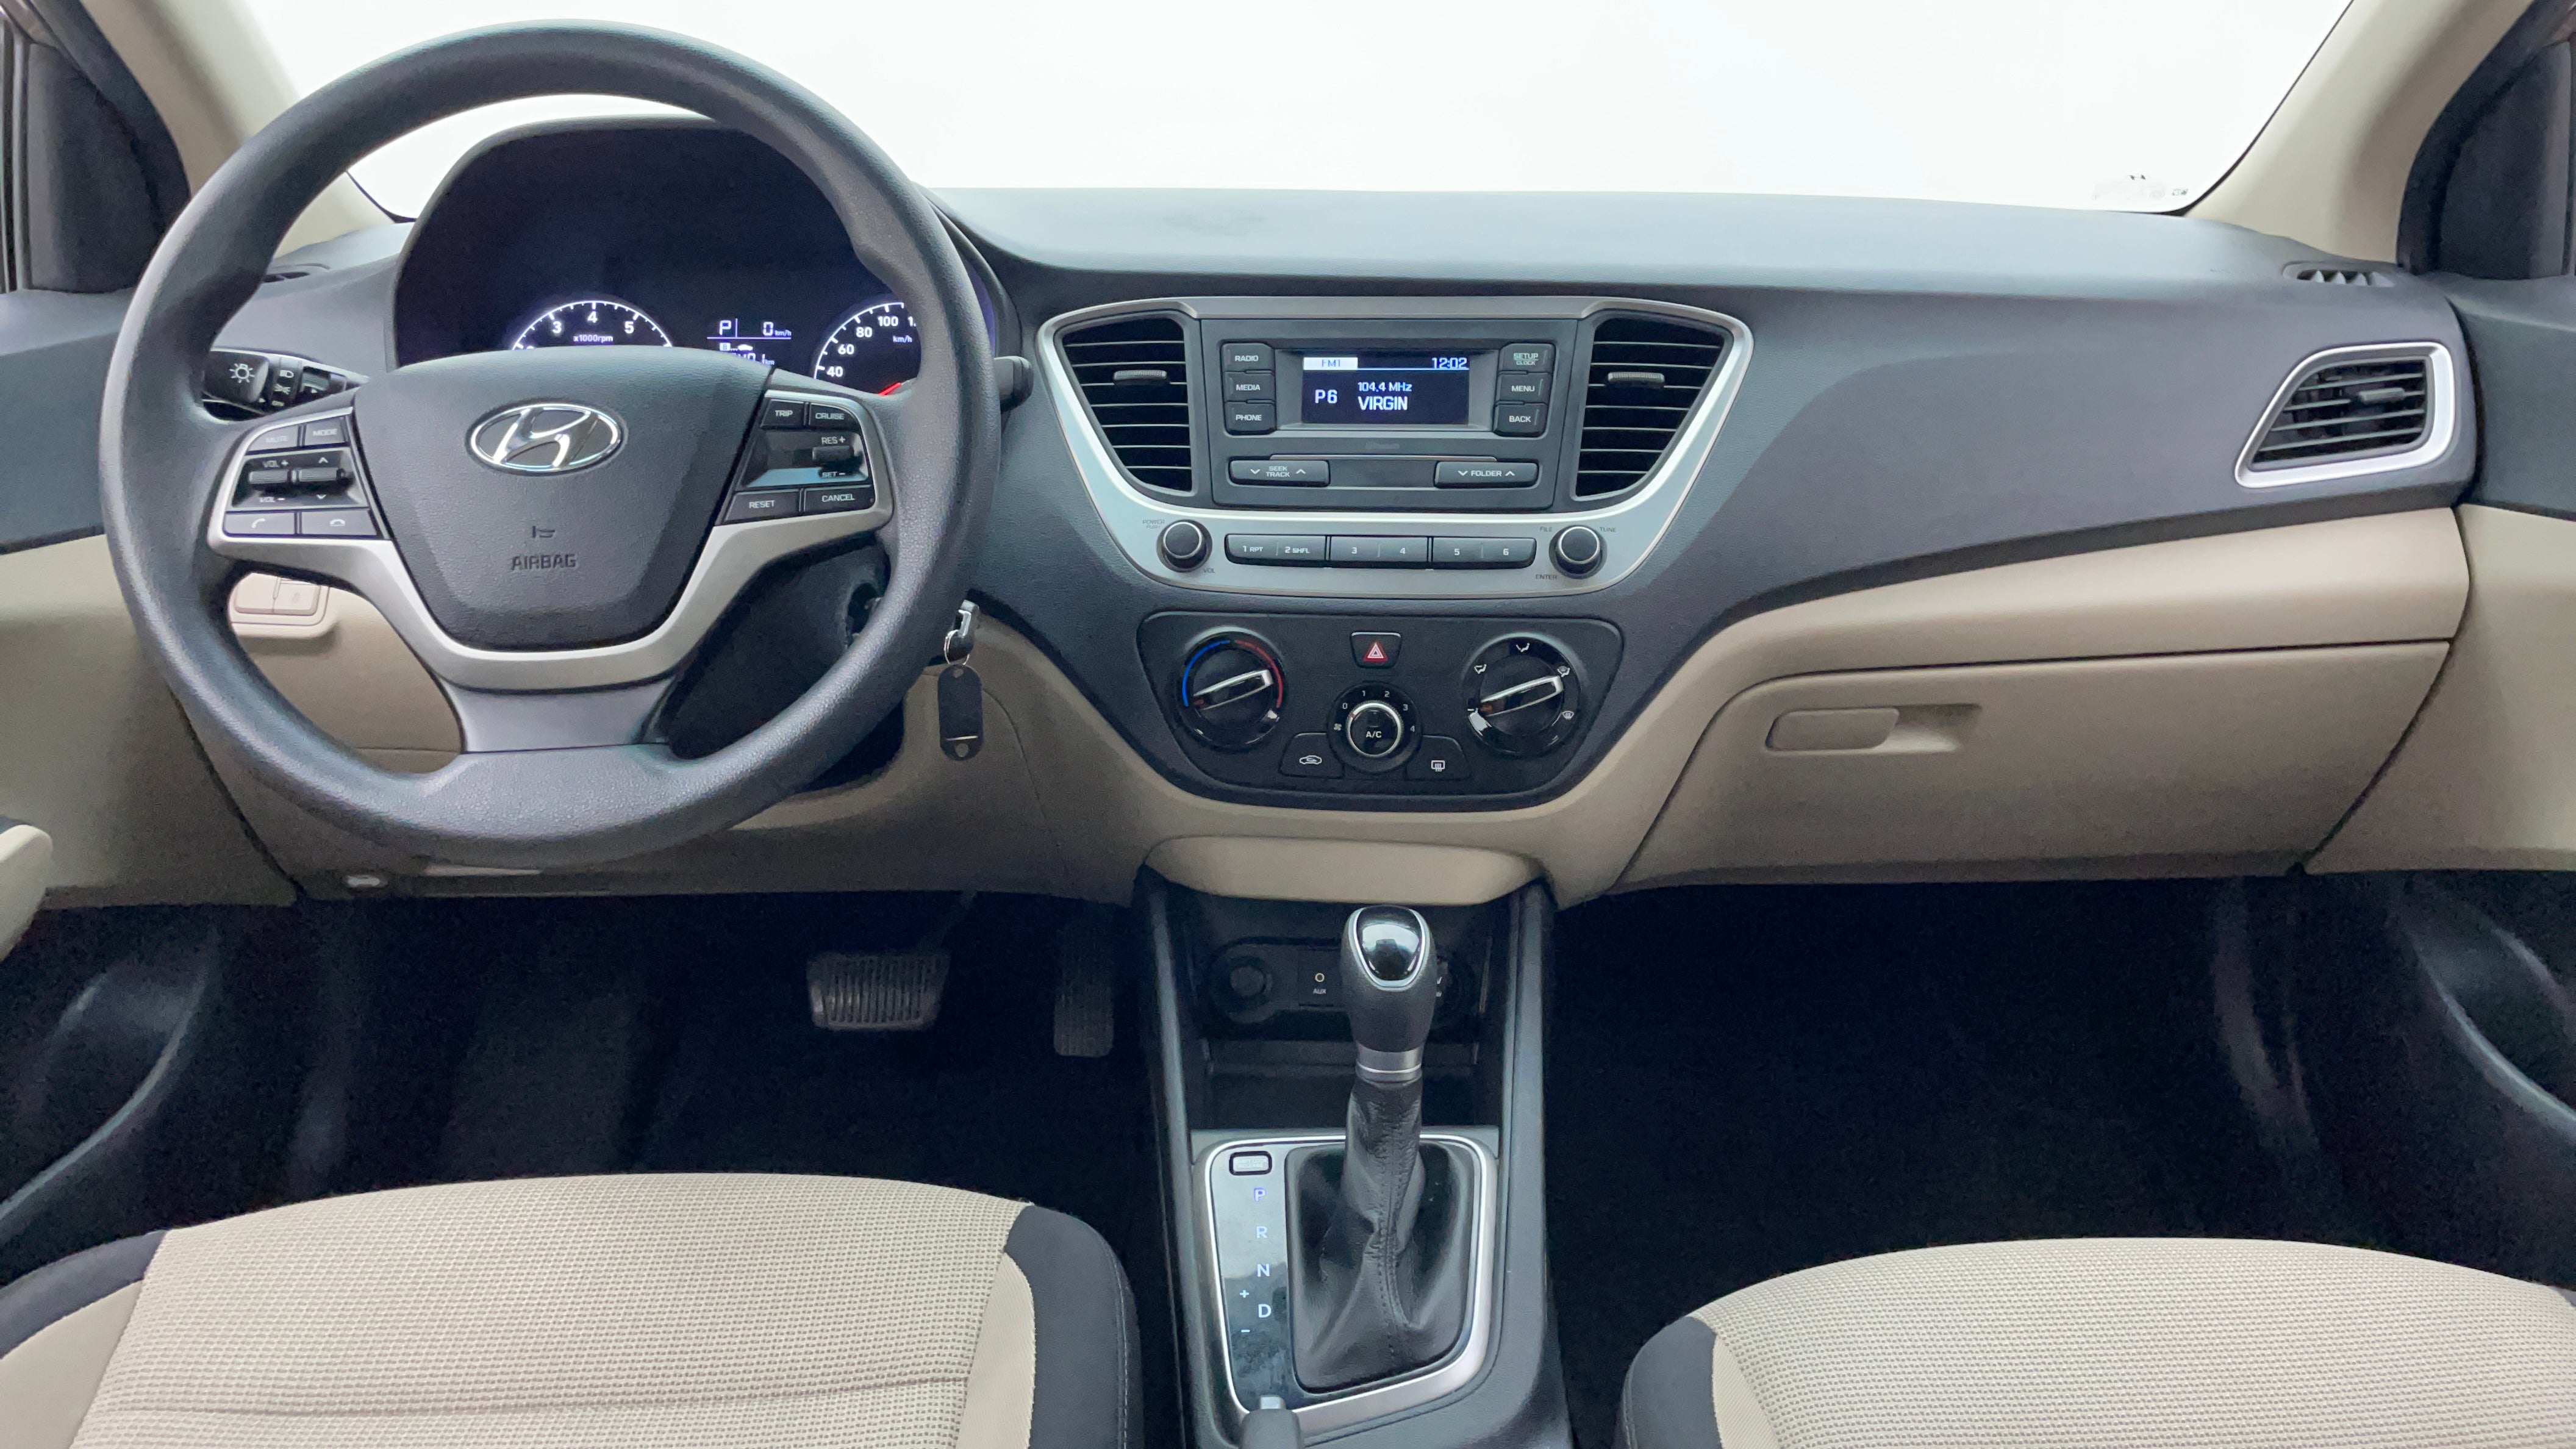 Hyundai Accent-Dashboard View